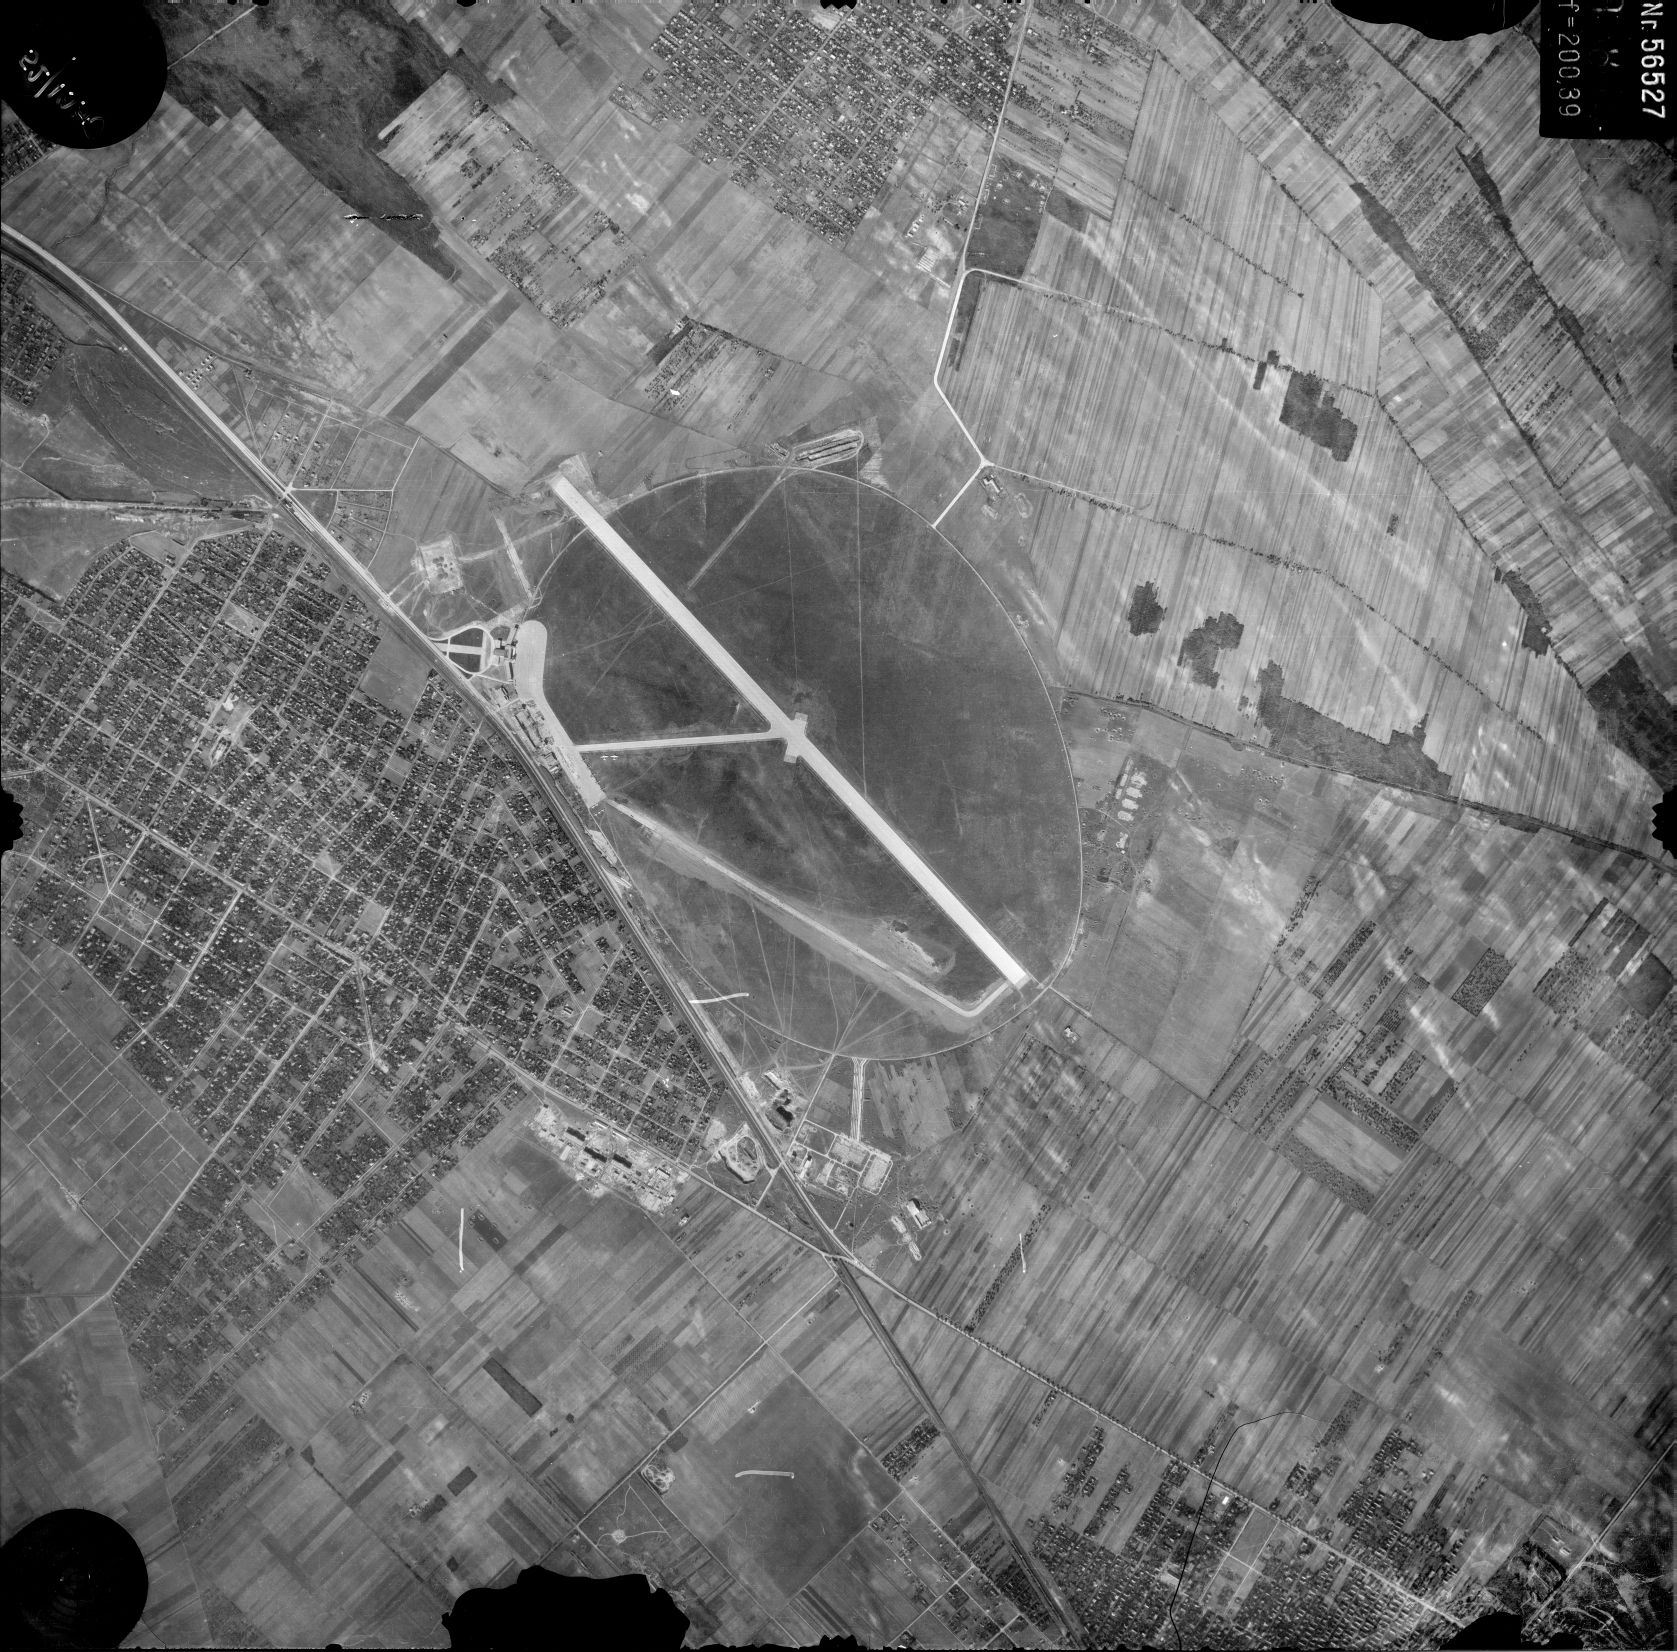 A 61 éve készült légifotó és a Google Earth képe jól összehasonlítást nyújt Ferihegy és környéke akkori és mostani állapotáról, például a reptér körbeépítettségének változásáról<br>1950-es légi fotó: HM Térképészeti Közhasznú Nonprofit Kft.